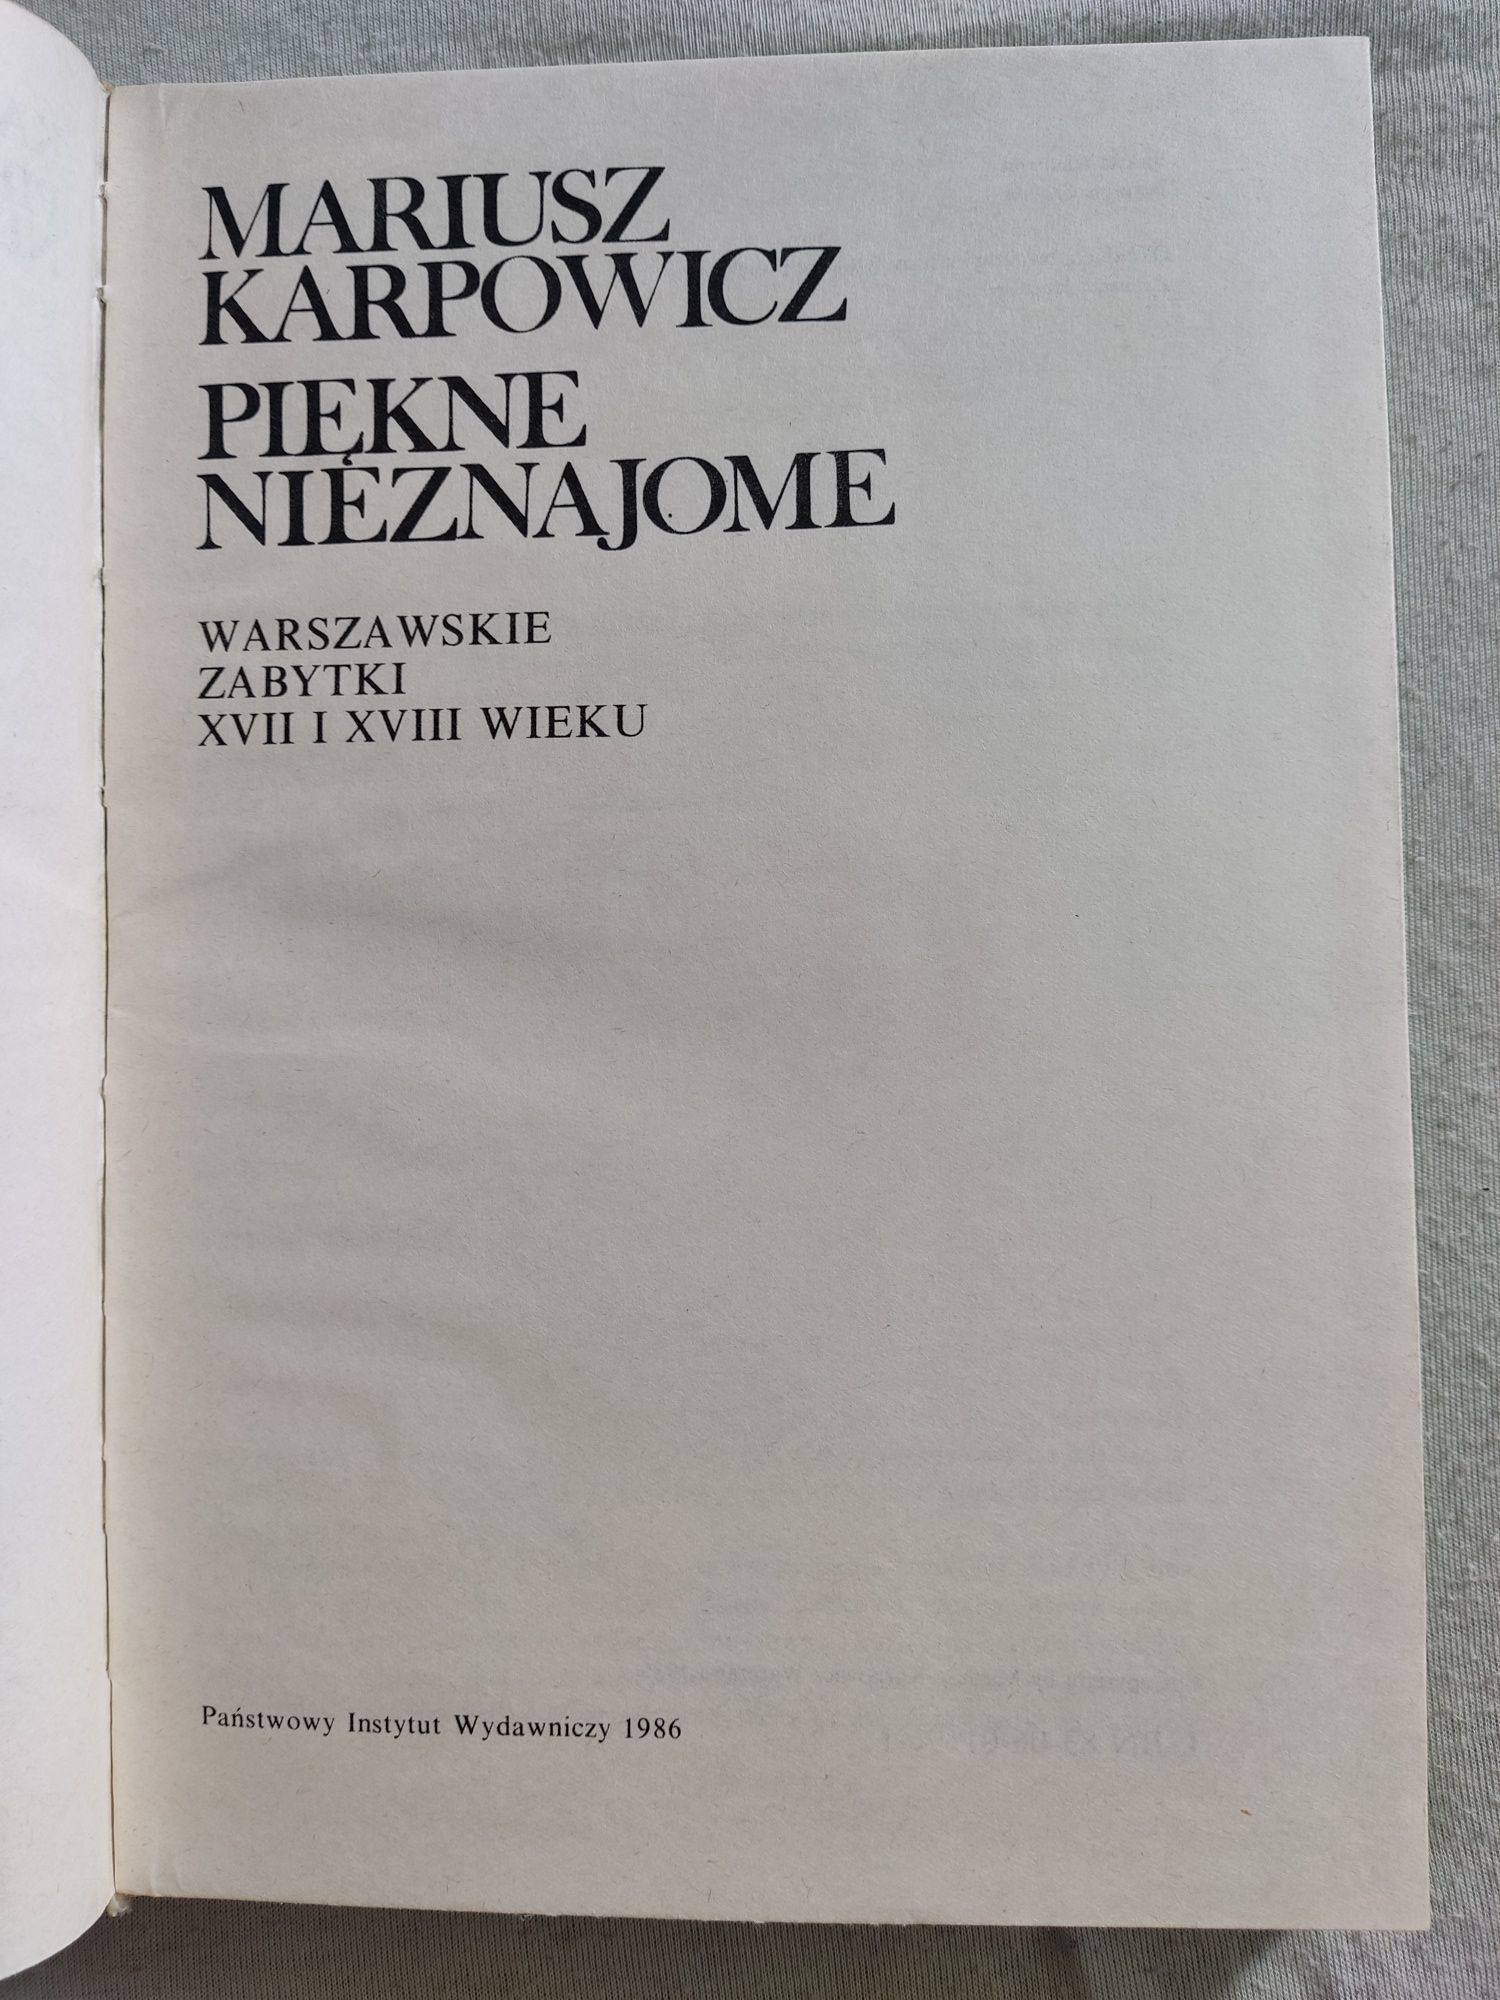 Piękne Nieznajome - Mariusz Karpowicz